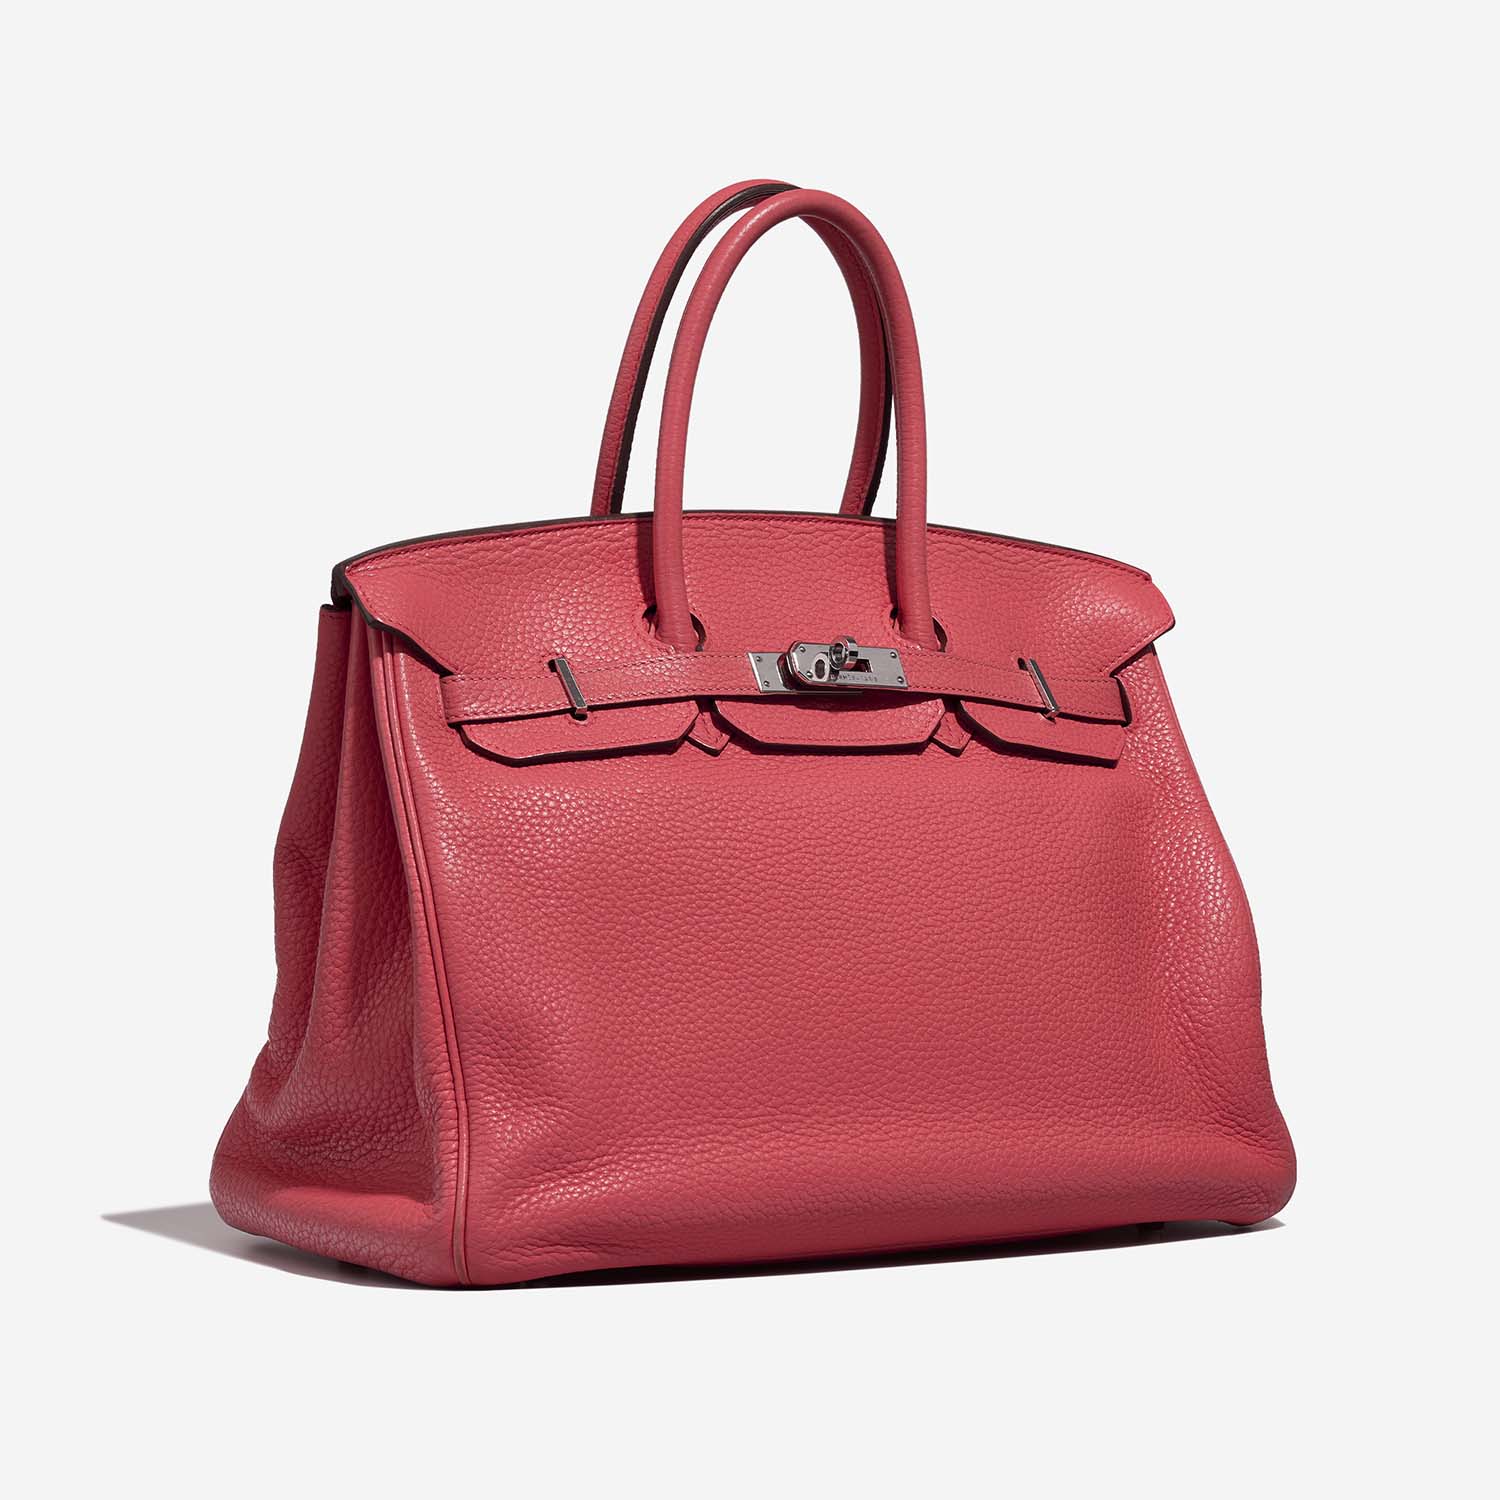 Hermès Birkin 35 RoseLipstick Side Front | Verkaufen Sie Ihre Designer-Tasche auf Saclab.com